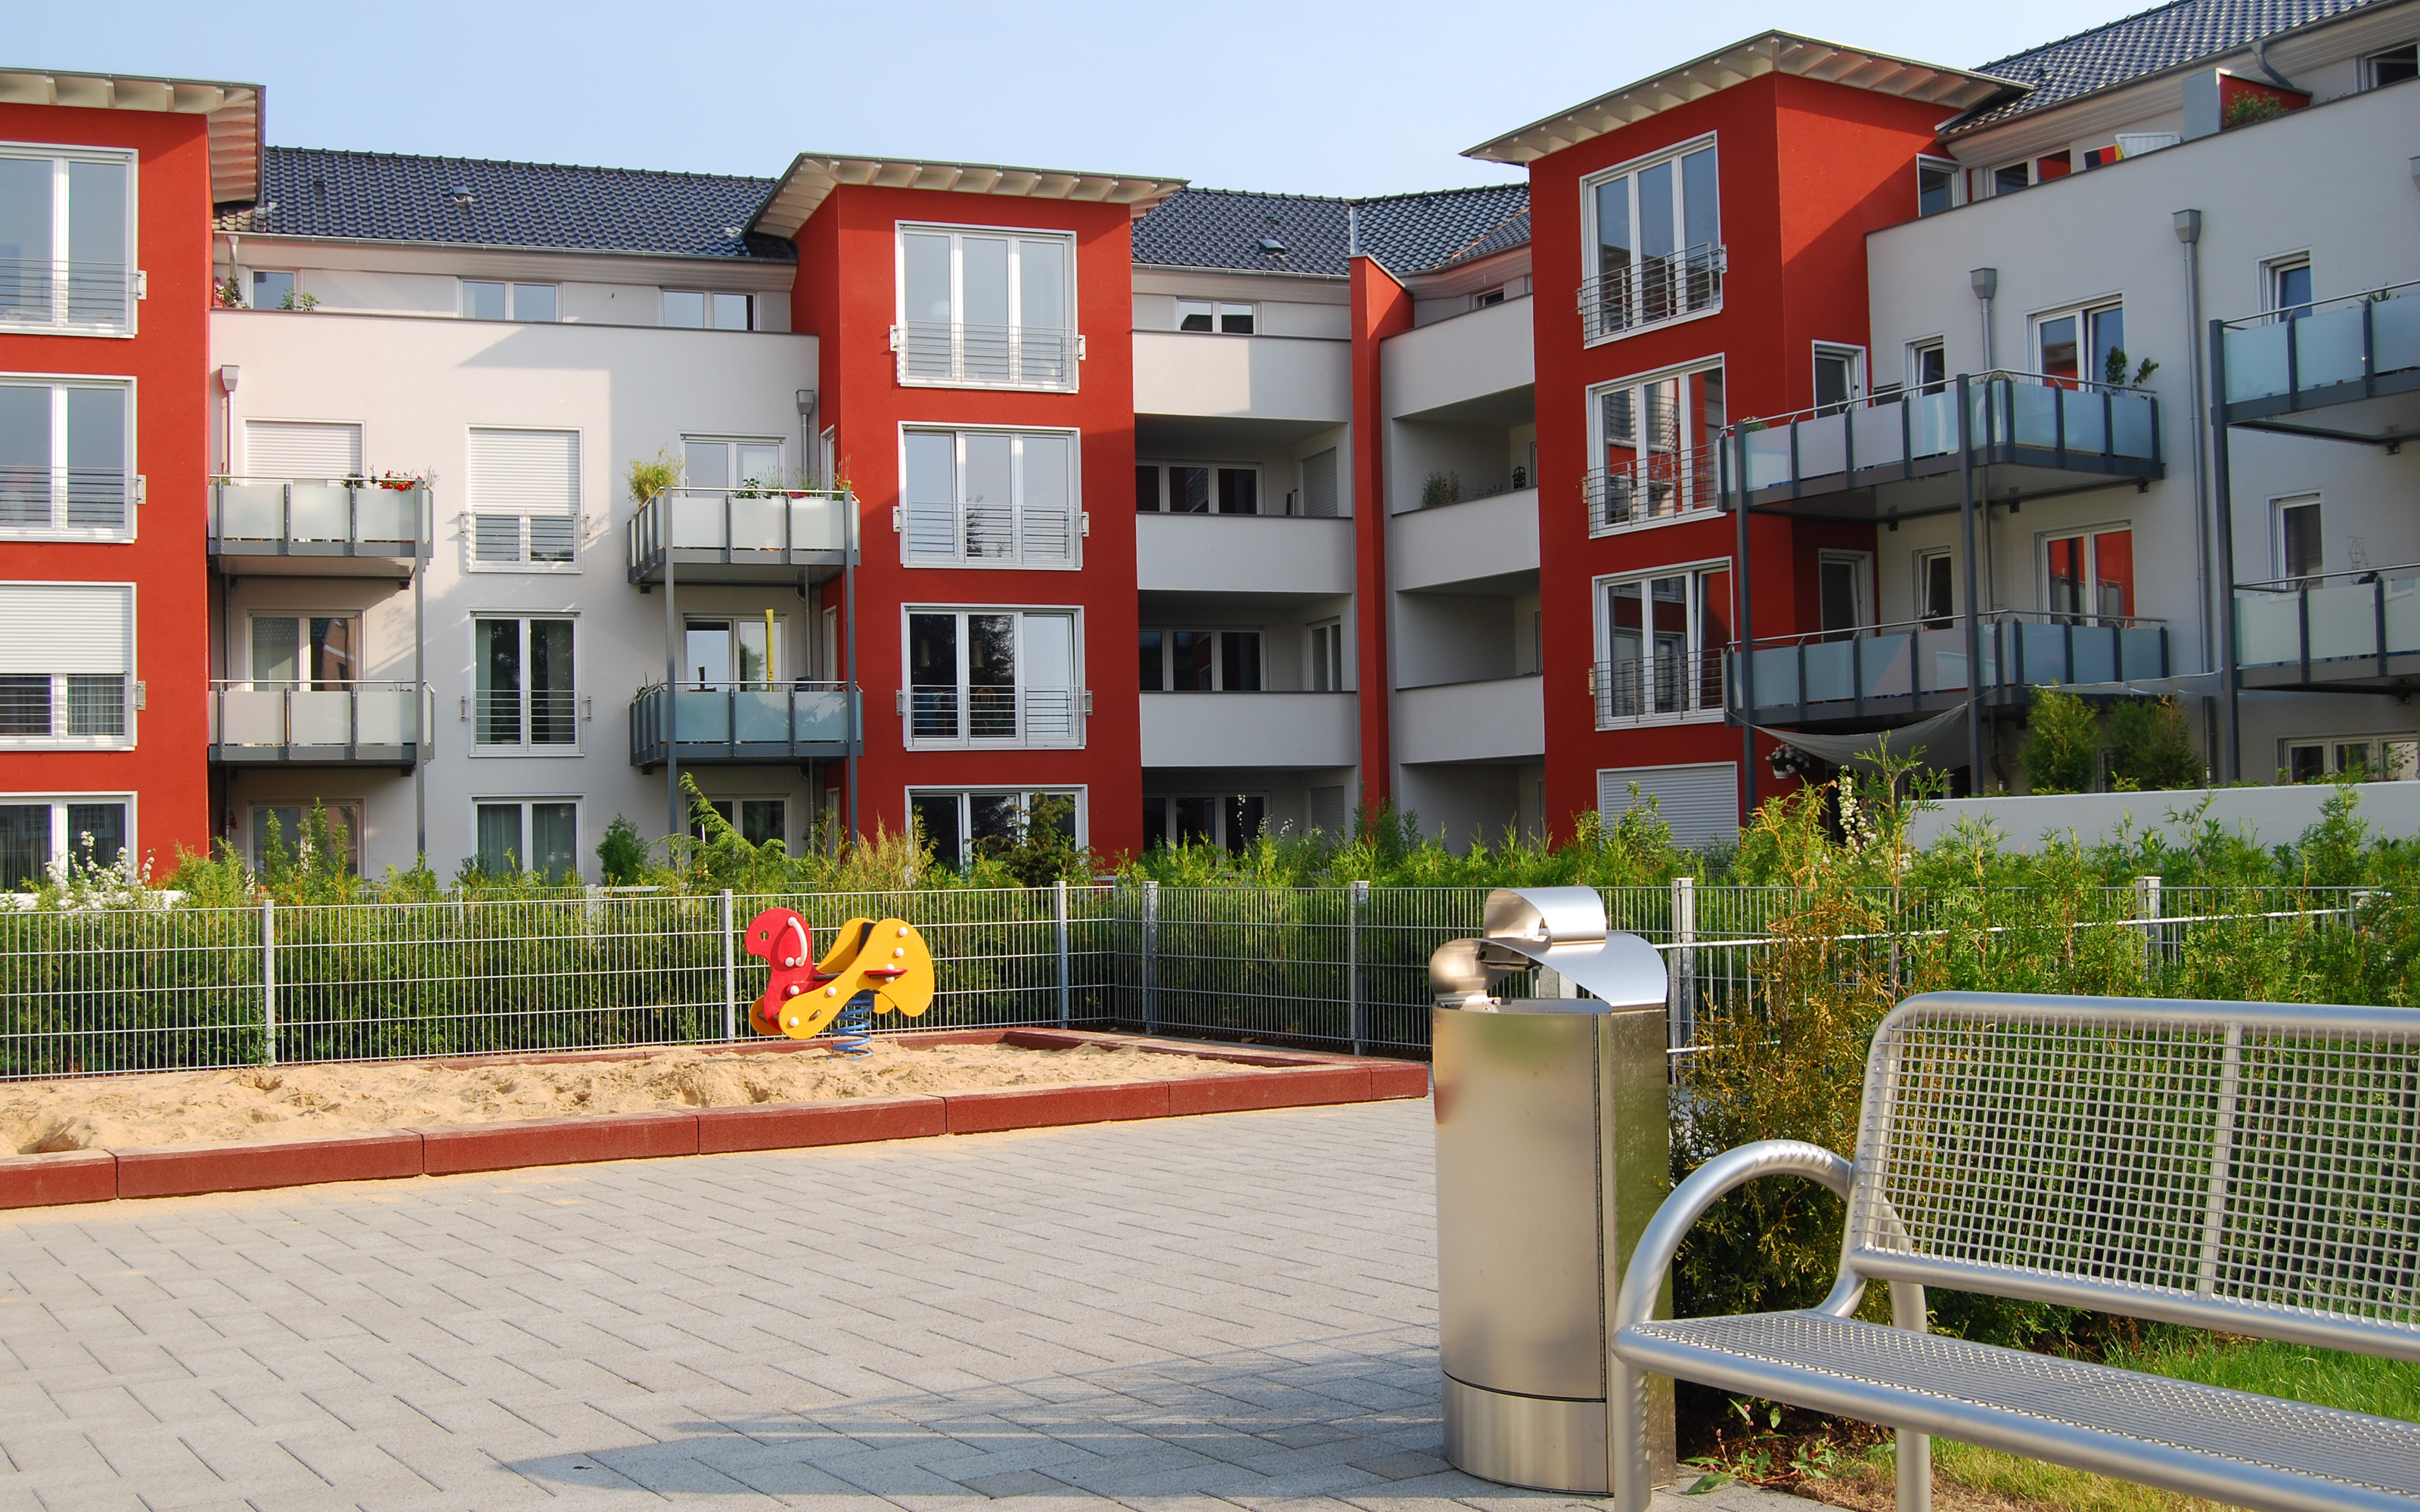 Spielplatz mit Sandkasten und Bank, umgeben von einer Wohnanlage mit rot-weißen Häusern